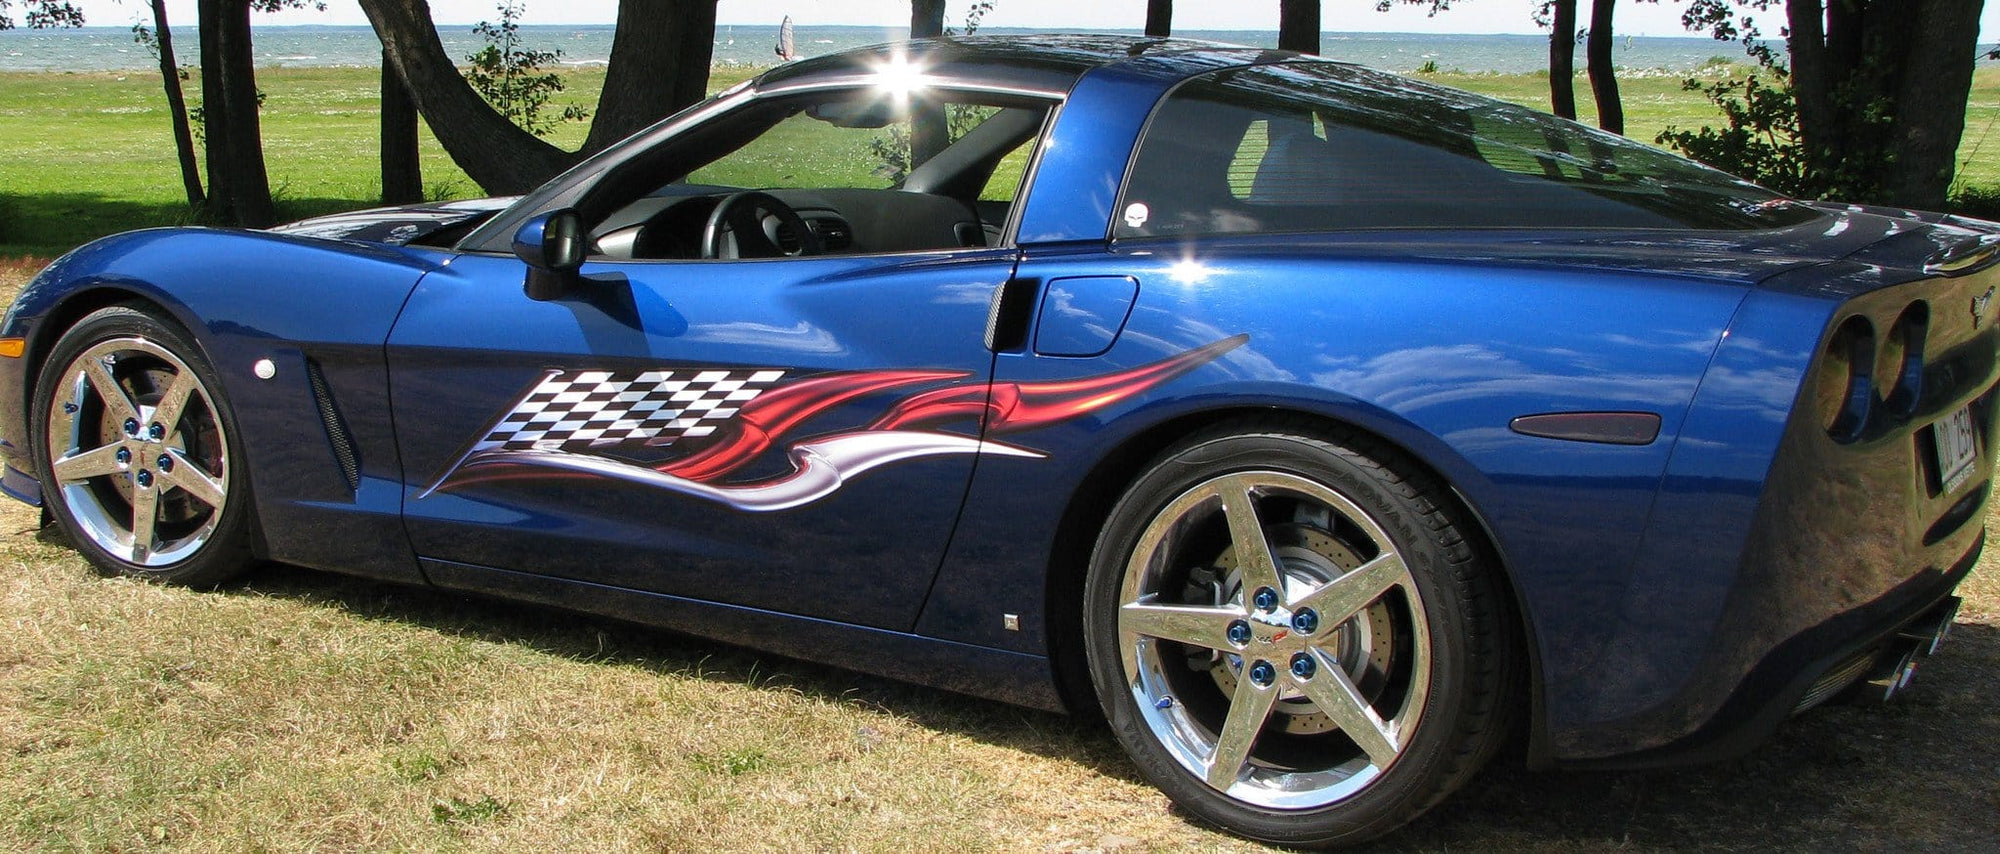 checkered flag vinyl graphics on blue corvette